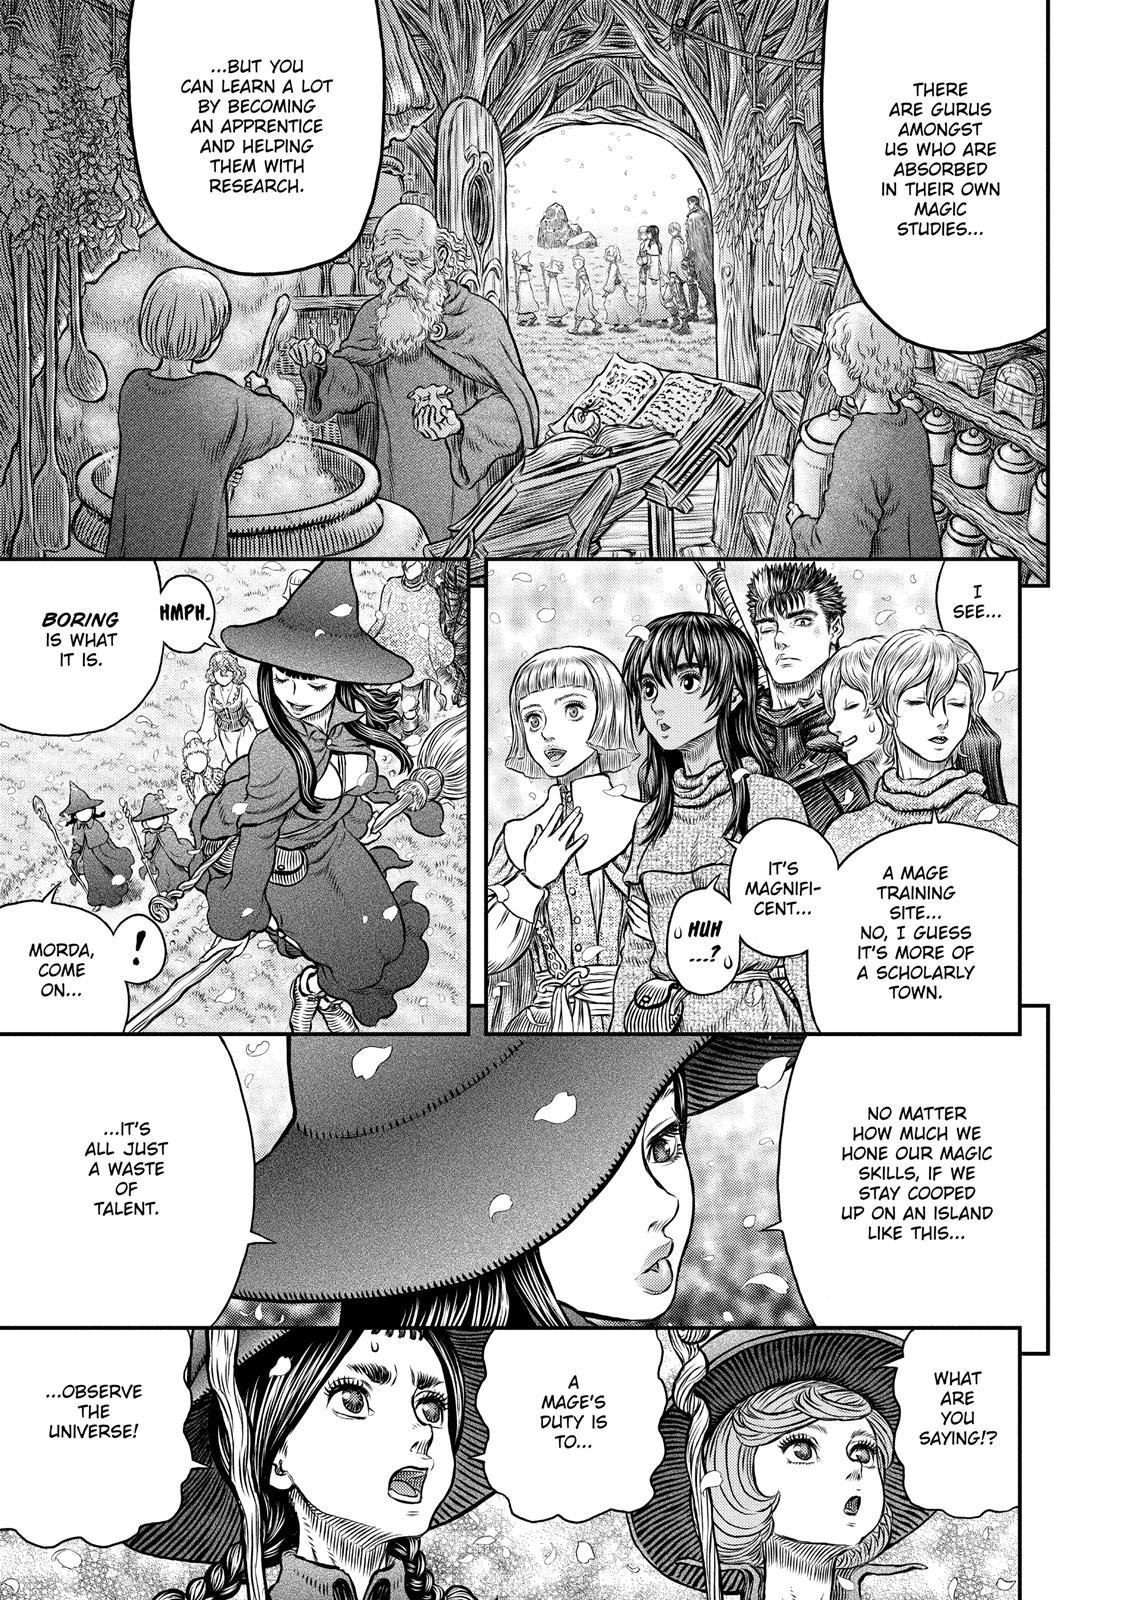 Berserk Manga Chapter 344 image 18